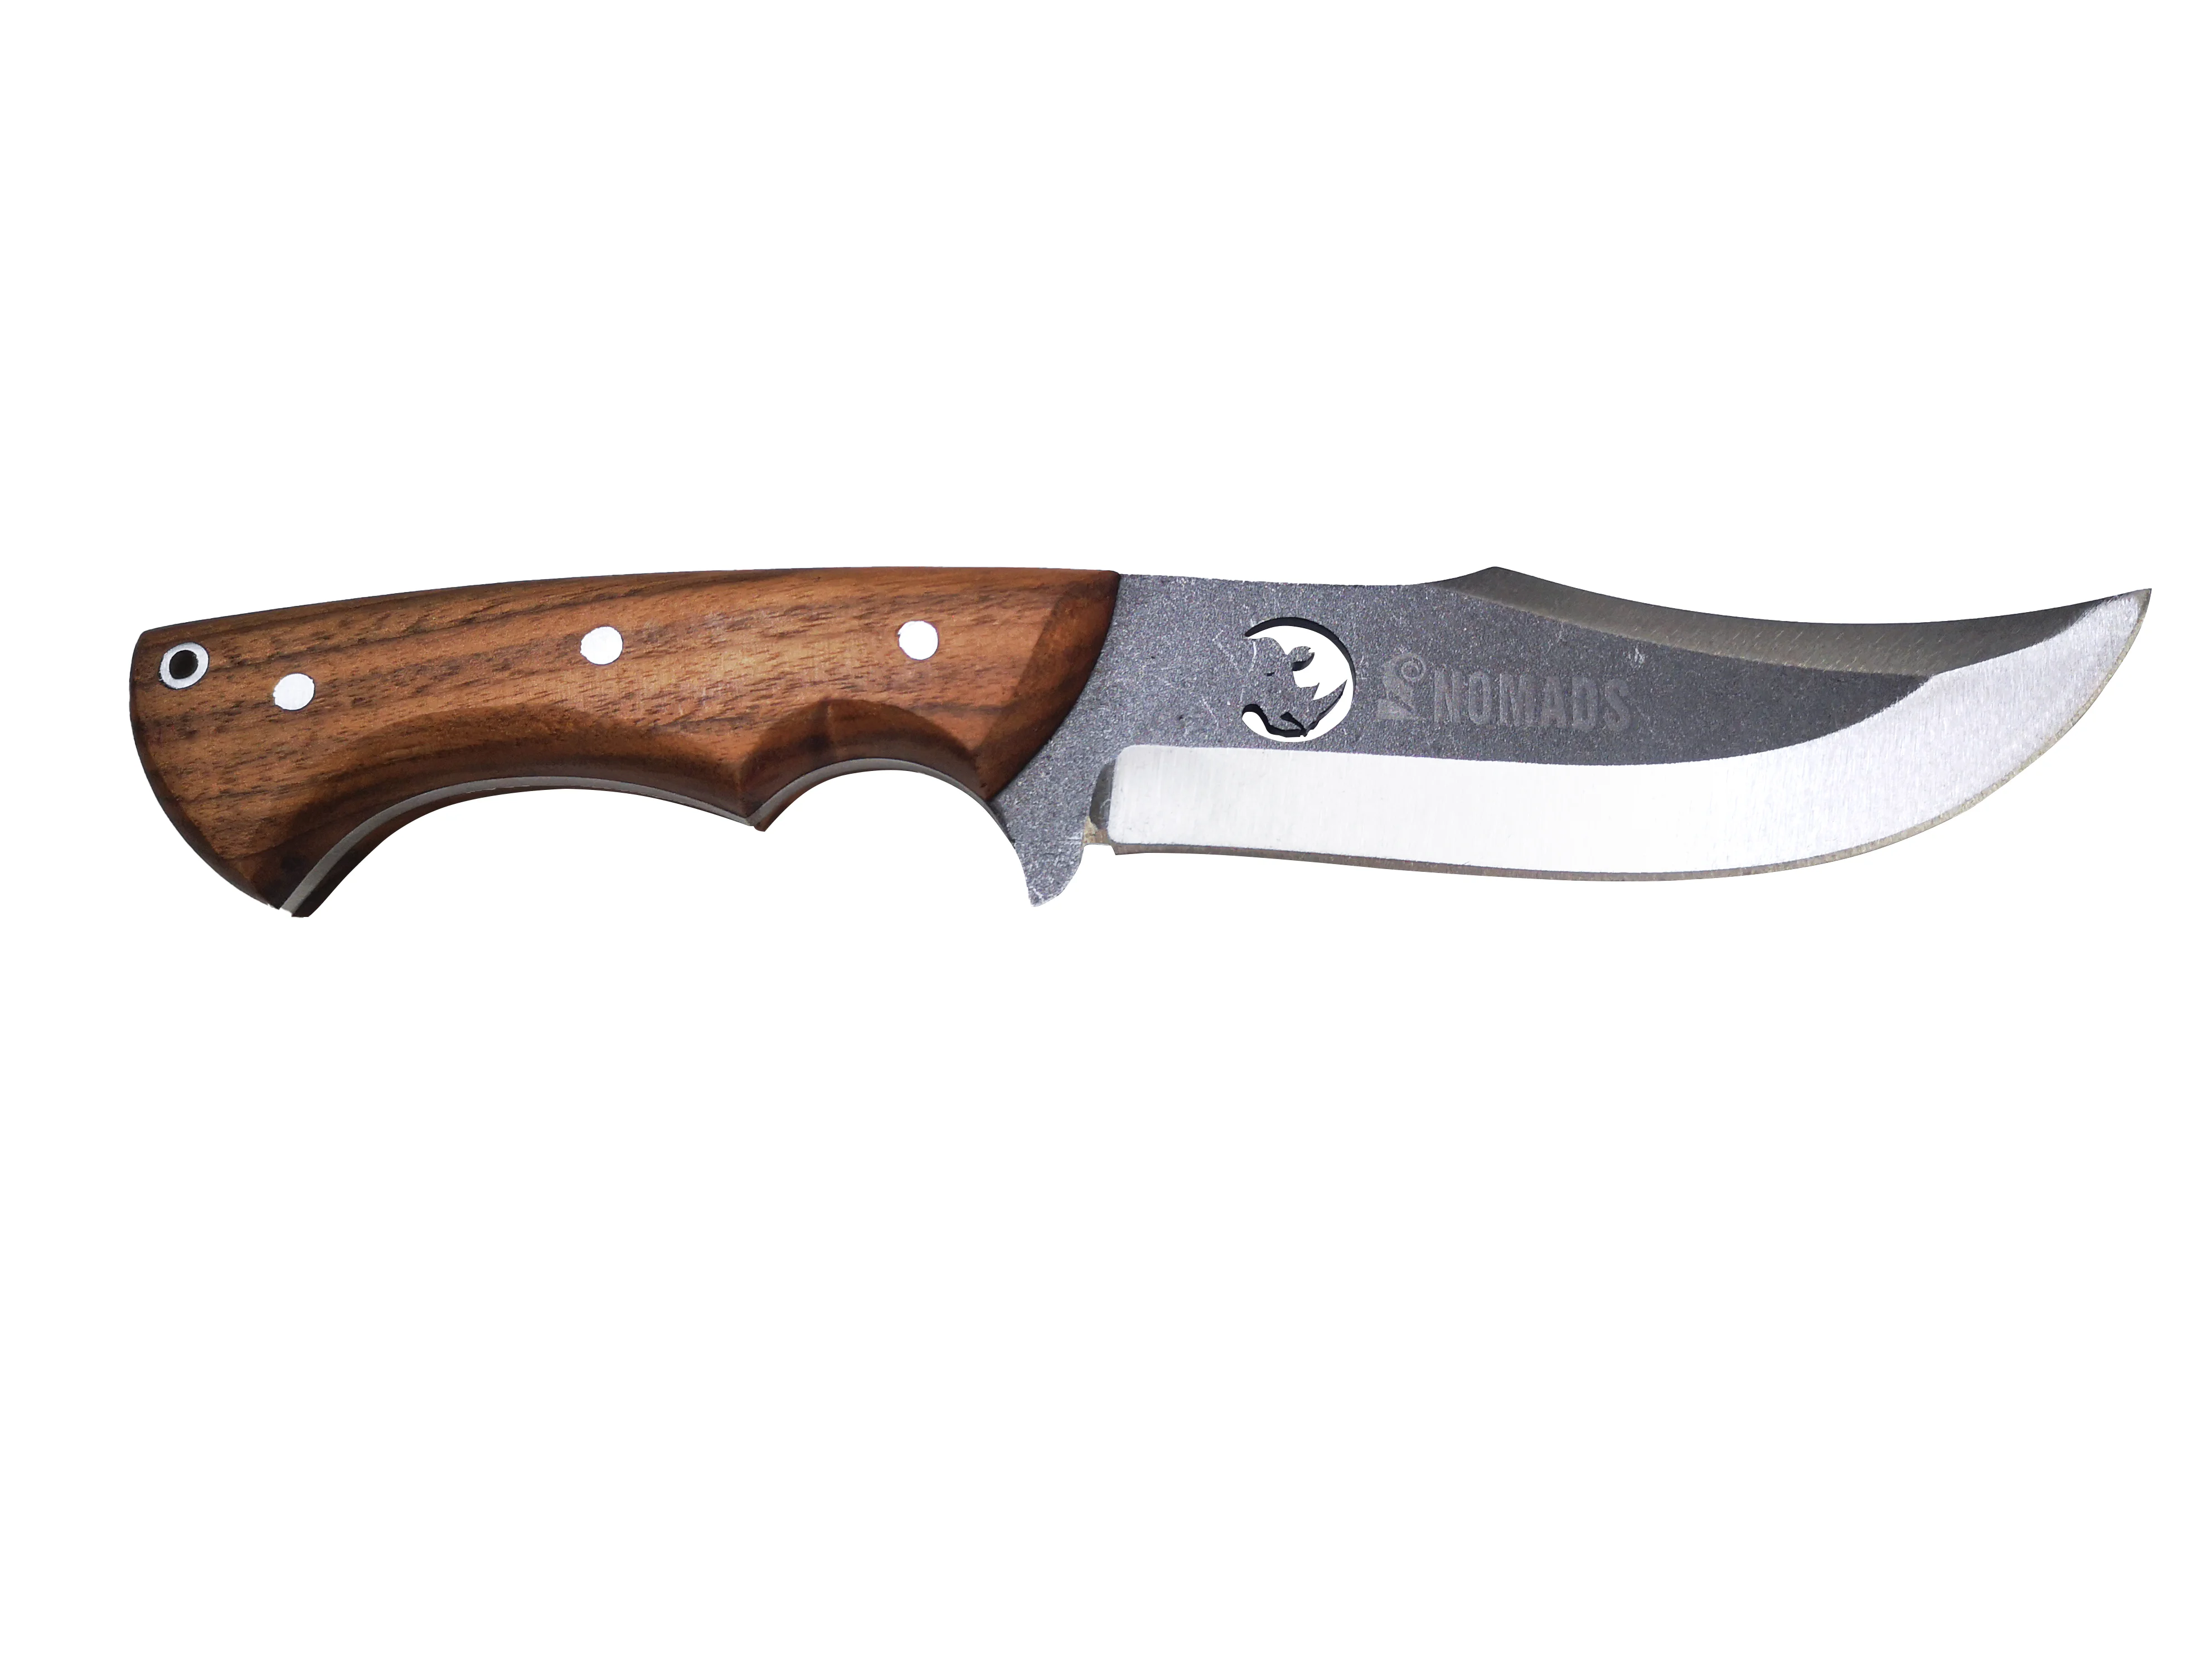 

Нож для выживания Nomads Rhino, бушкрафт, нержавеющая сталь Inox 4116, ручная работа, деревянная ручка, кемпинг, охота, на открытом воздухе